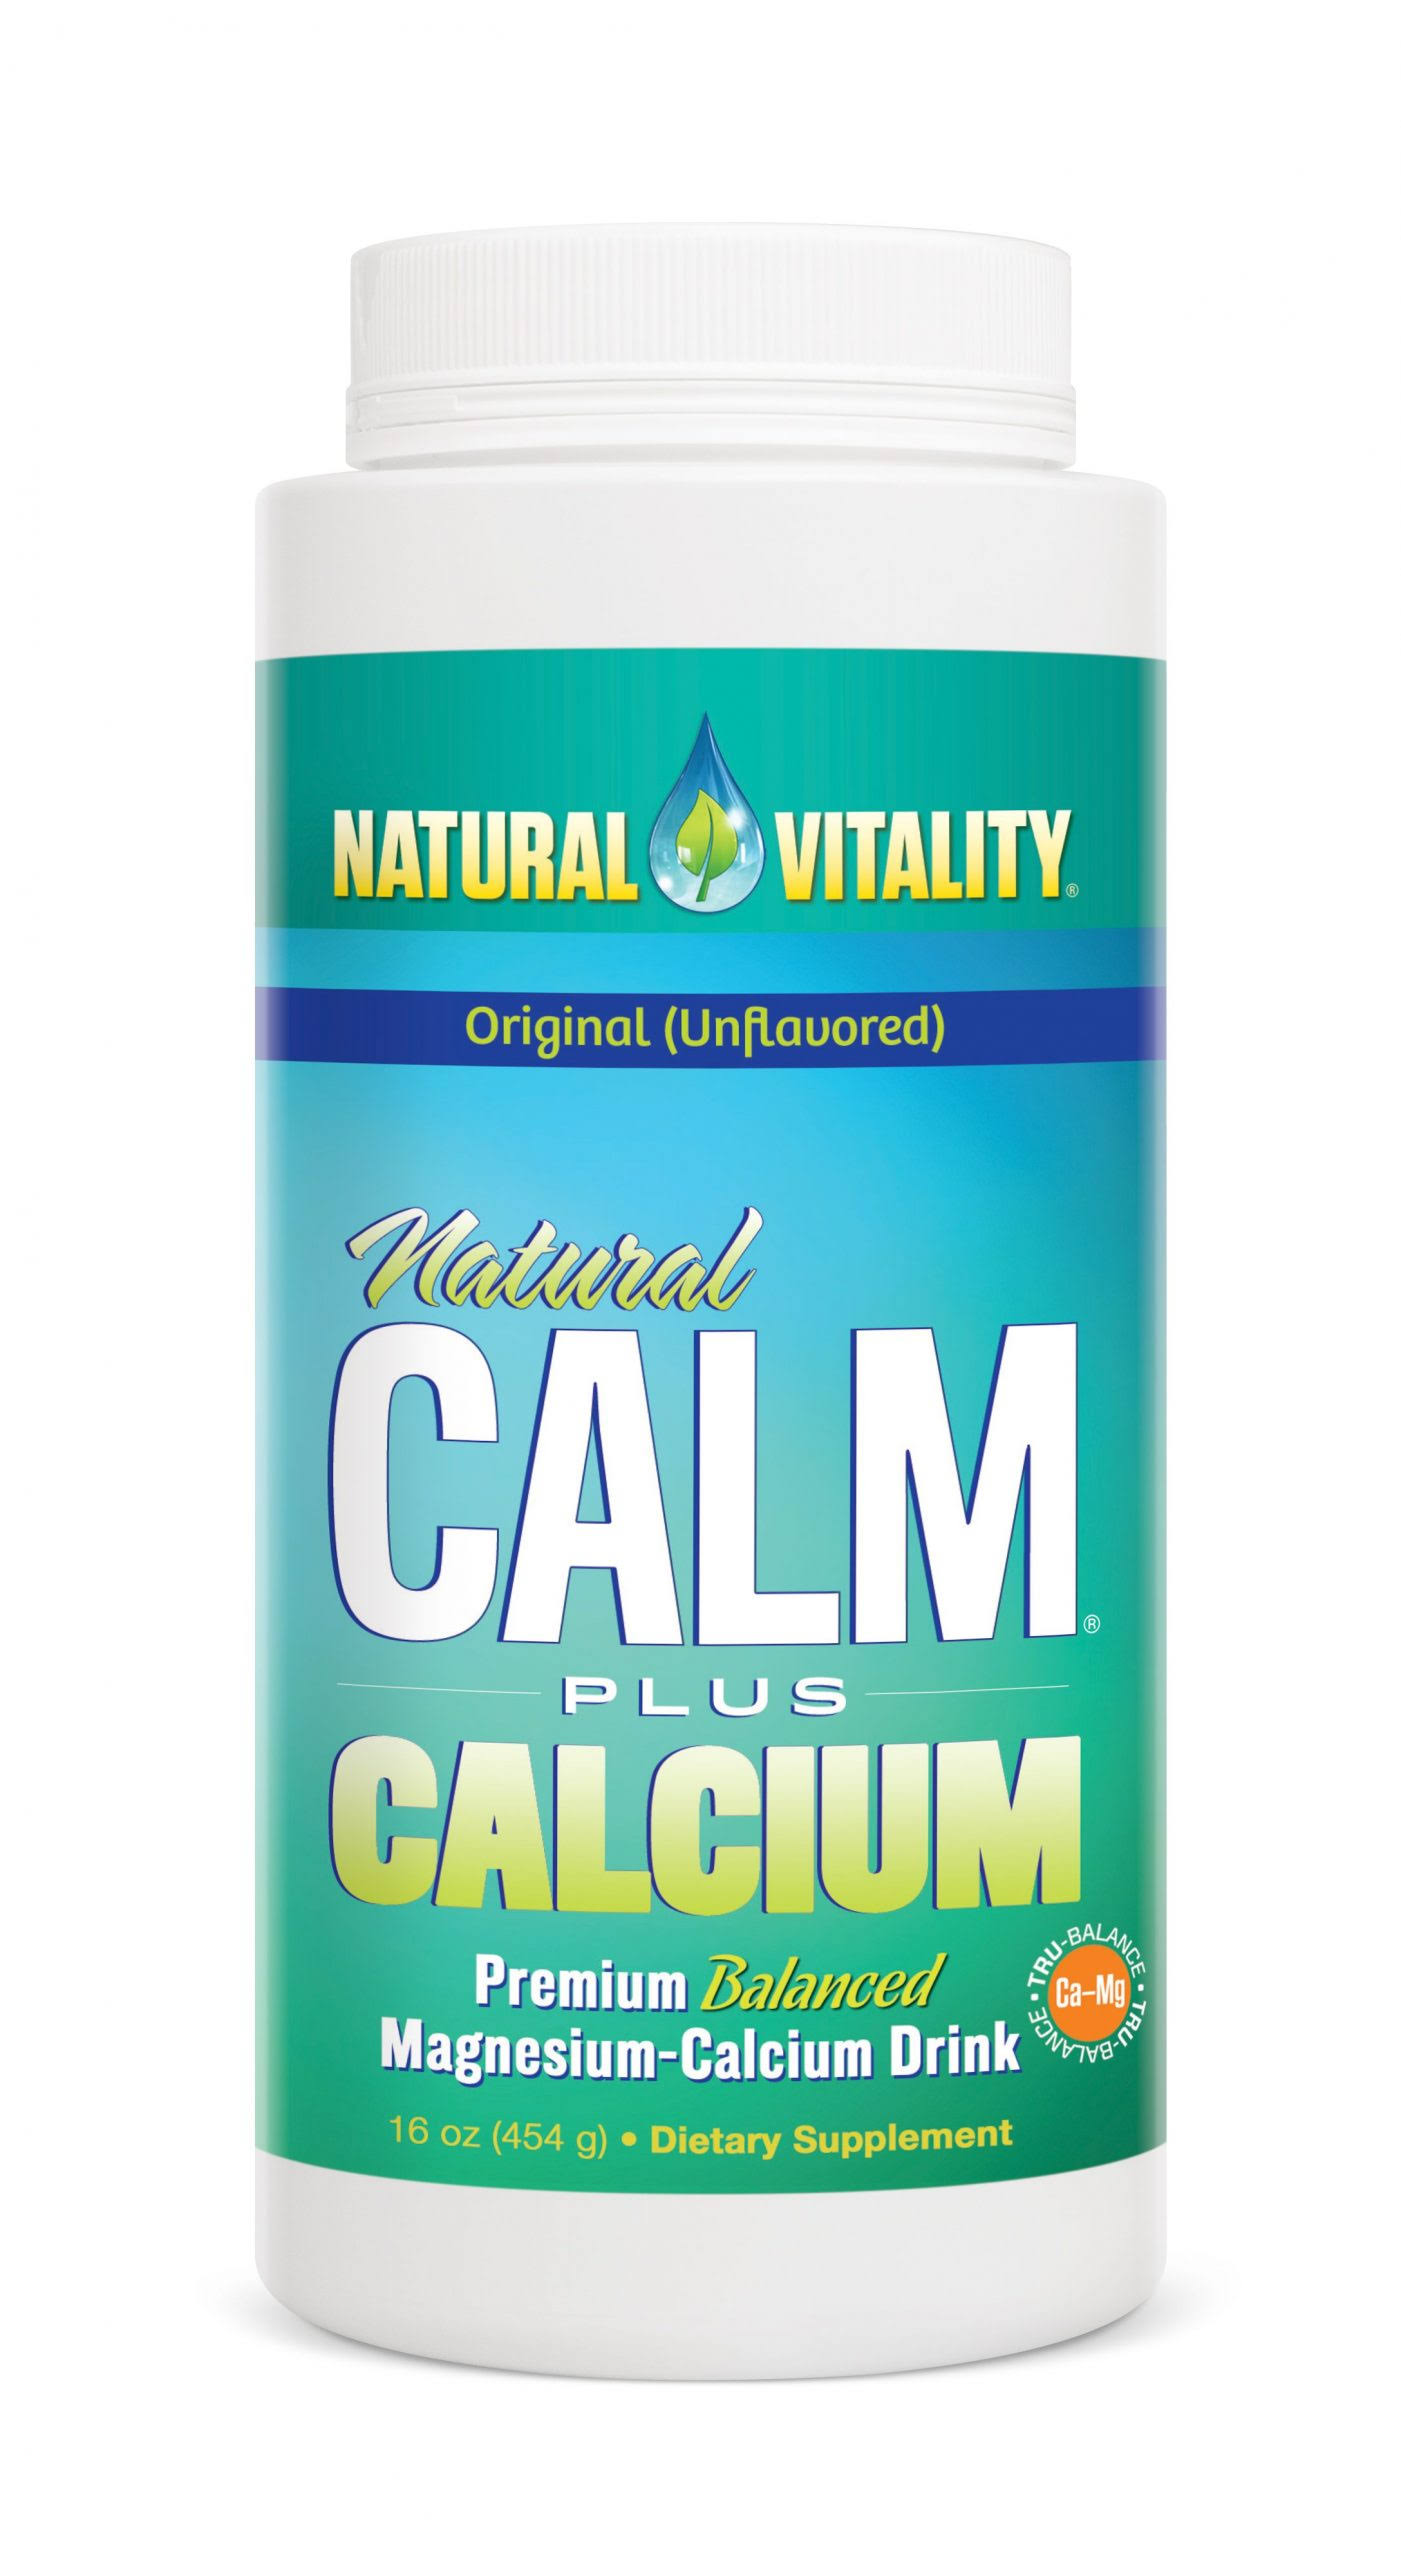 Natural Calm Plus Calcium Diet Supplement - 16oz